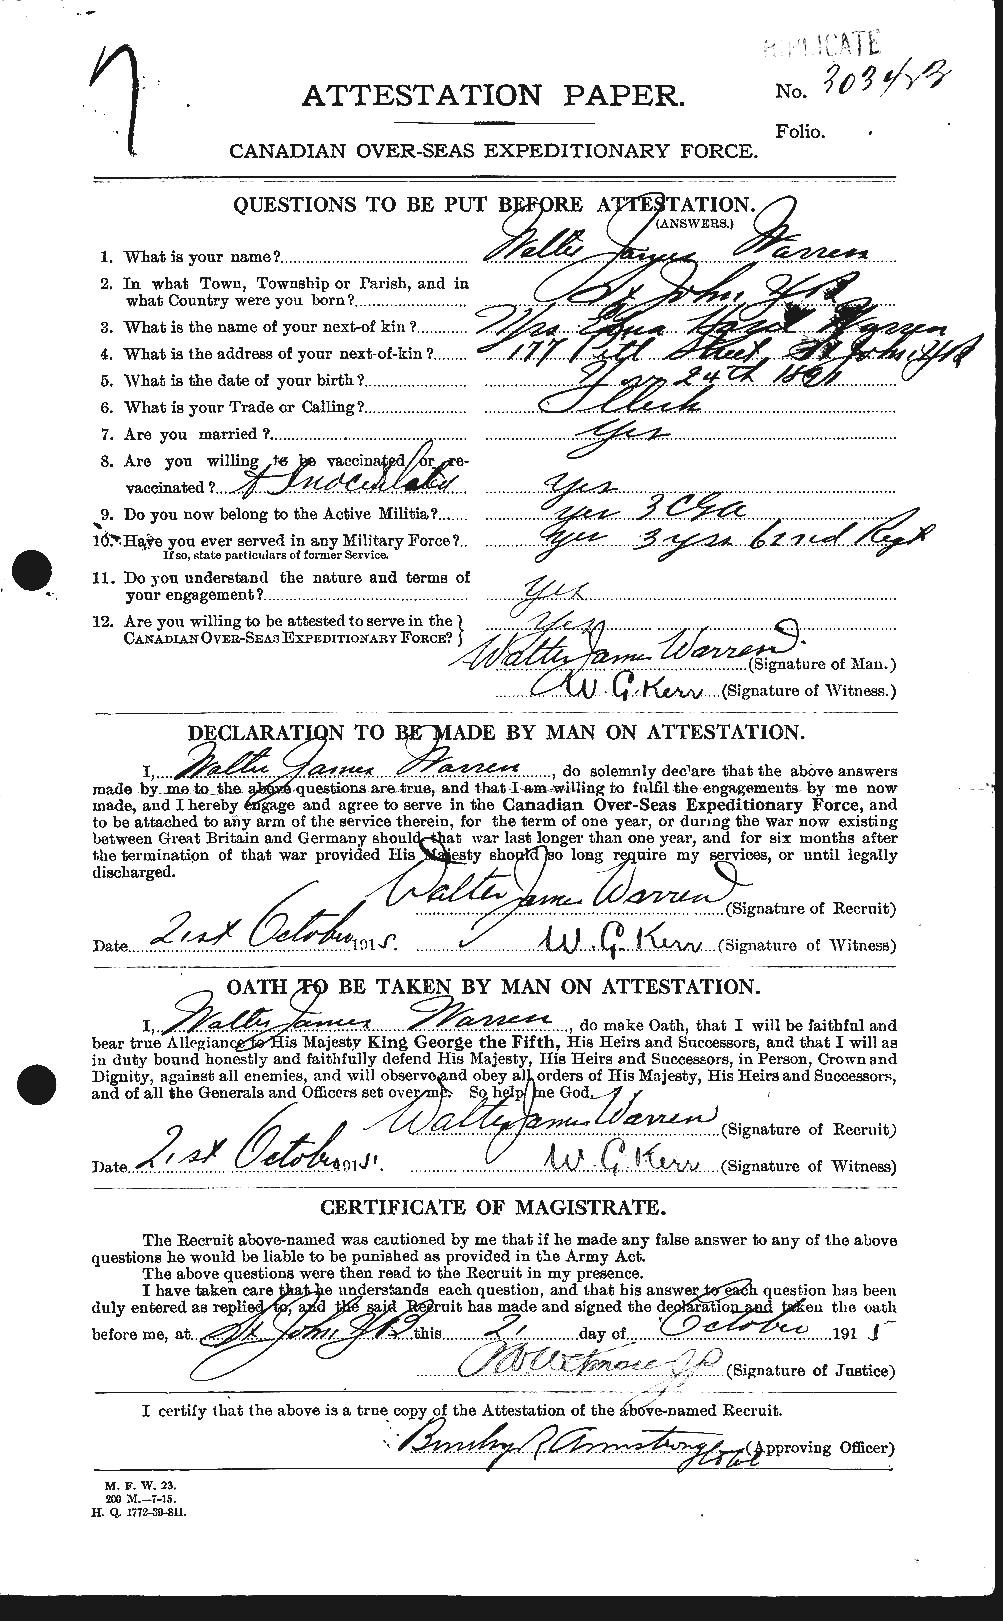 Dossiers du Personnel de la Première Guerre mondiale - CEC 658656a